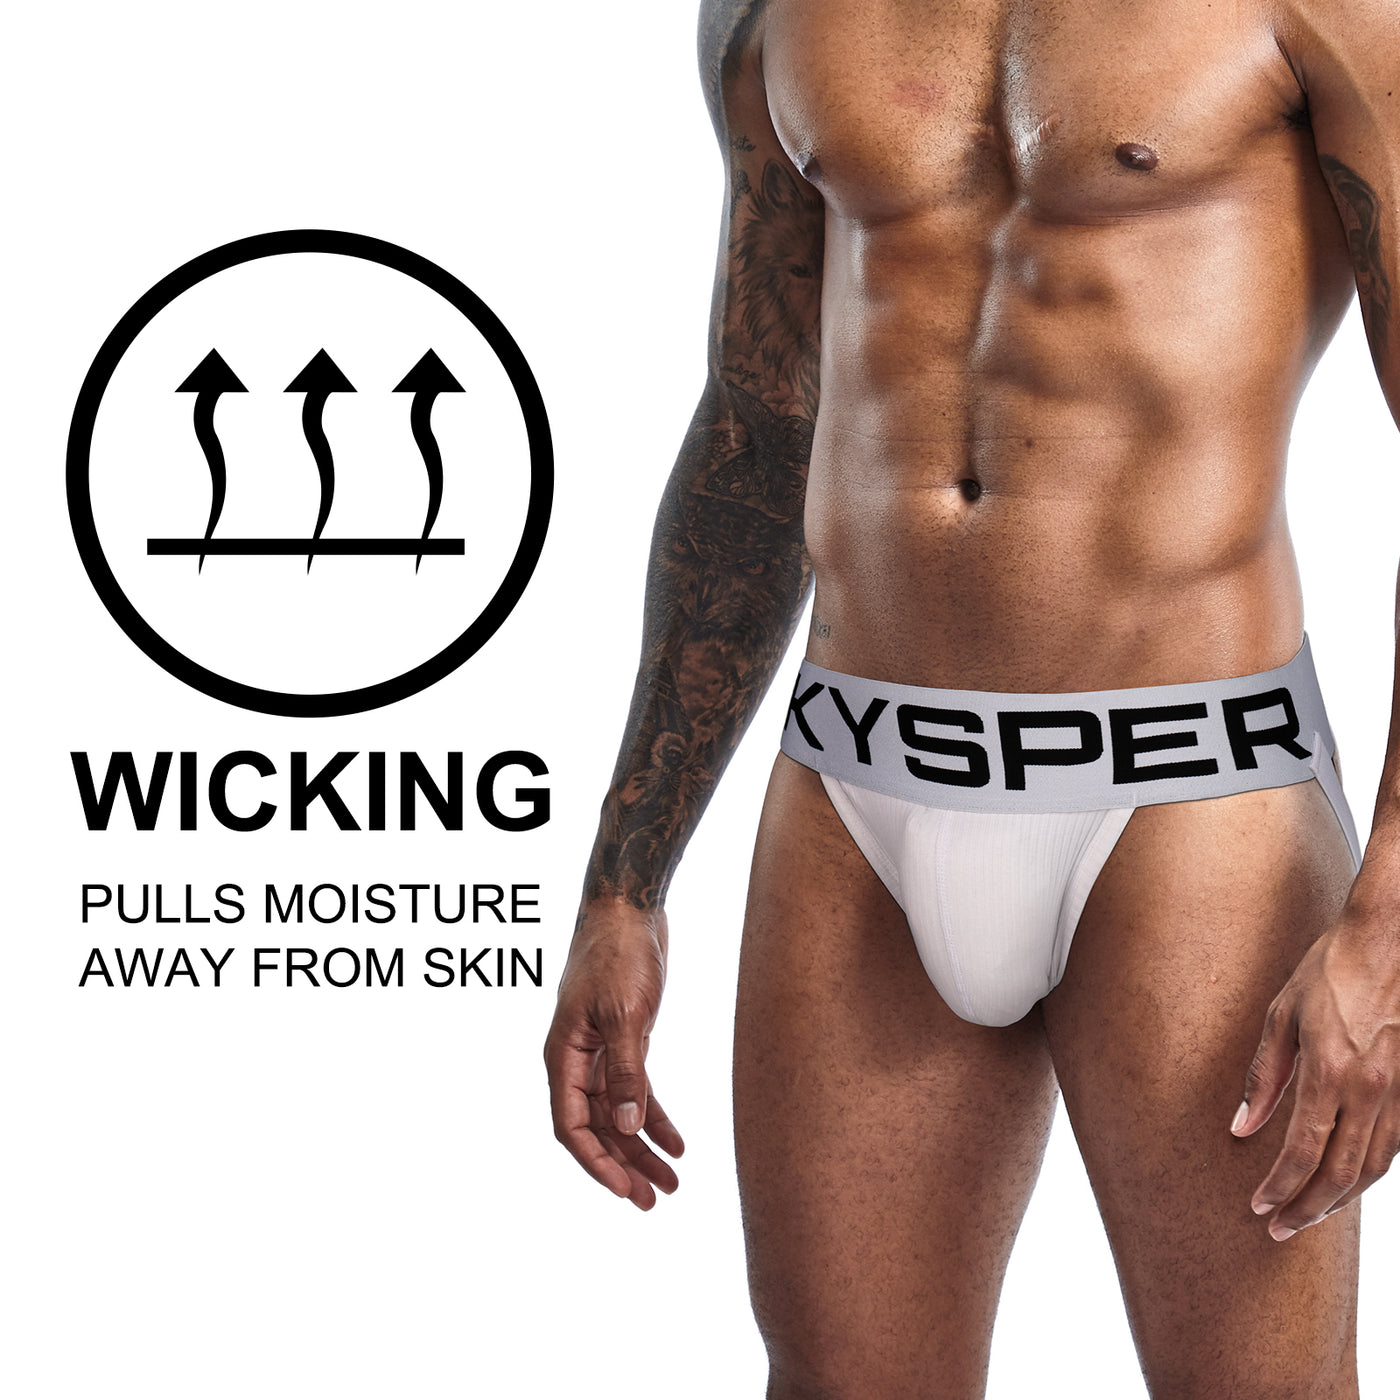 AQ06 - SKYSPER Men's Jockstrap Underwear Athletic Supporter